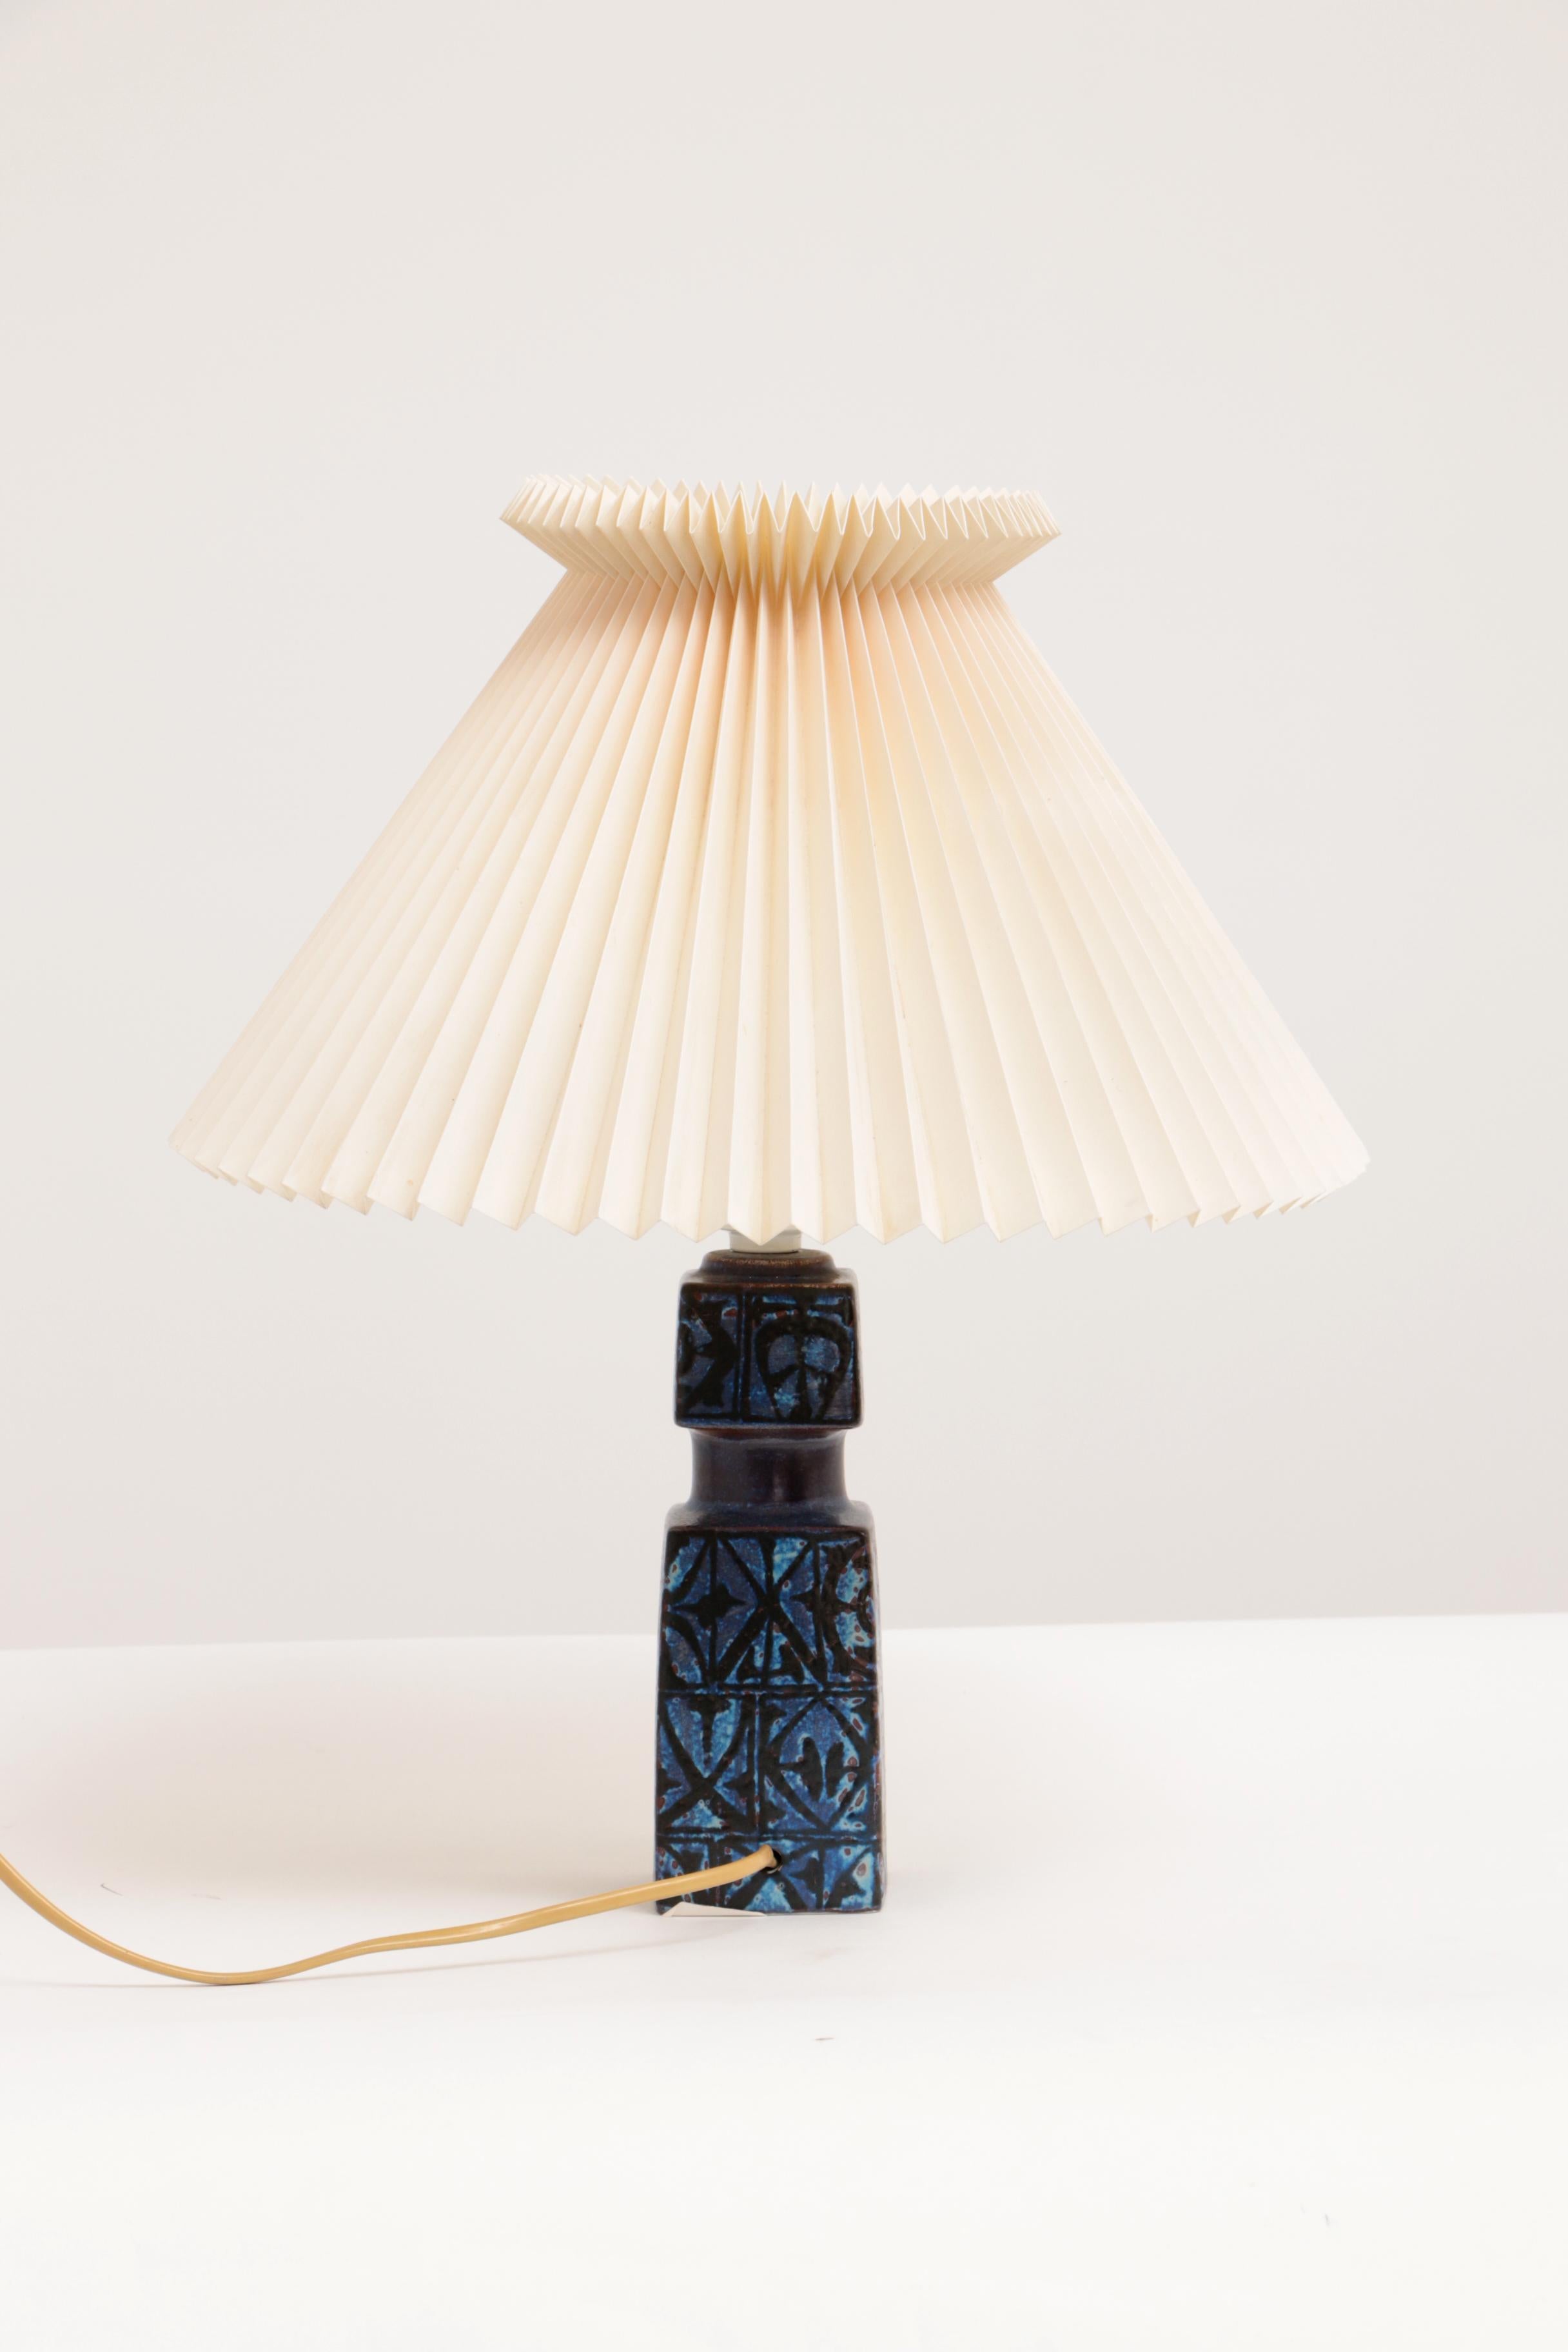 Blue Nils Thorsson Table Lamp for Royal Copenhagen/Fog & Mørup, 1970s For Sale 2